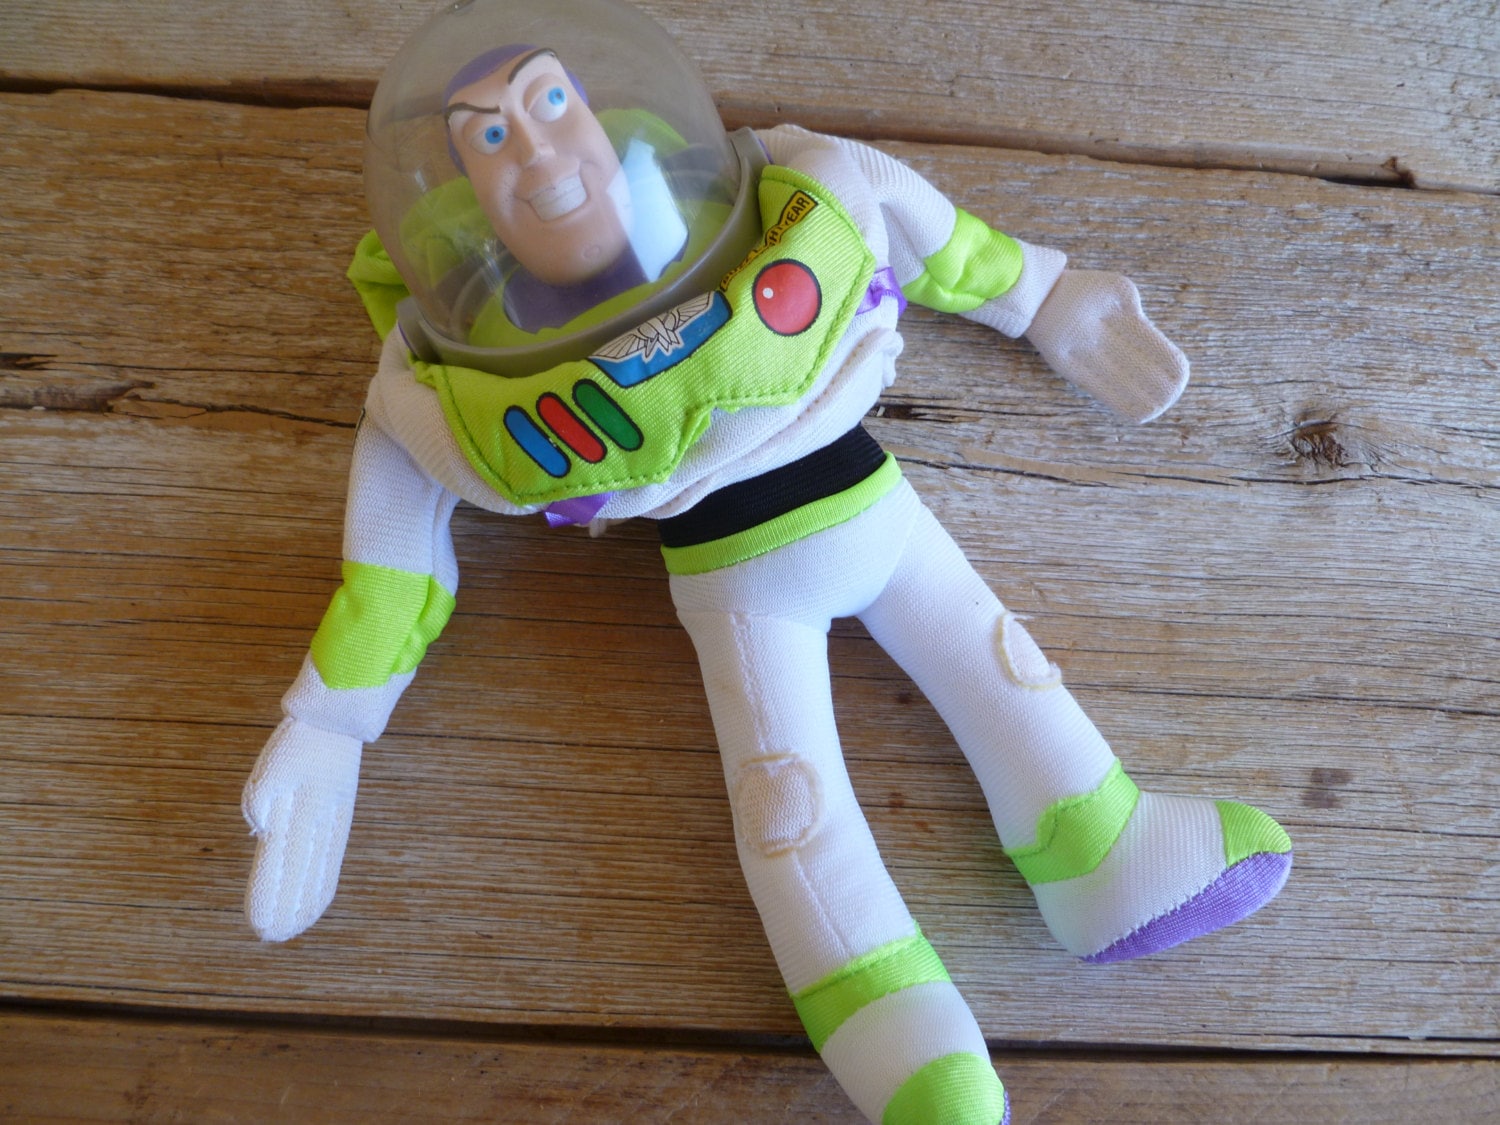 Buzz Lightyear 15" Plush Toy Story 